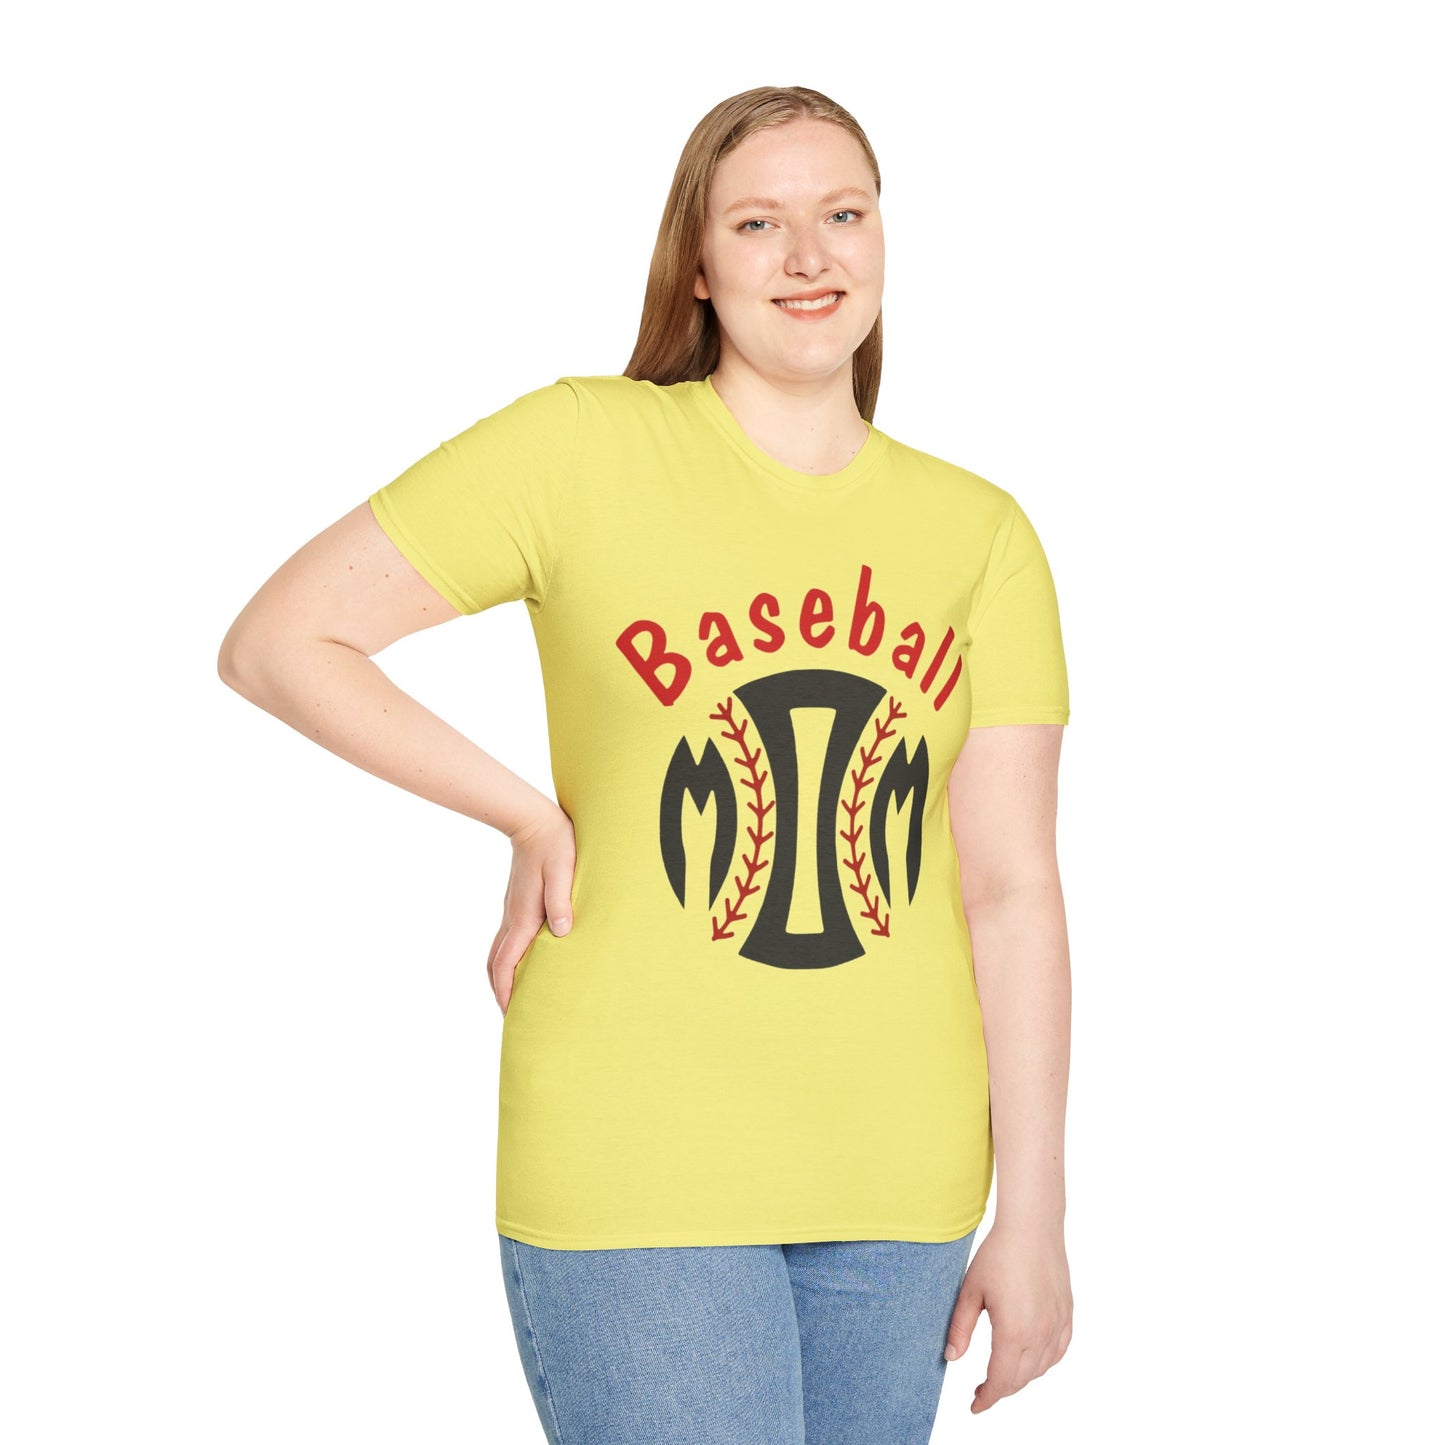 Baseball Mom - Unisex Softstyle T-Shirt